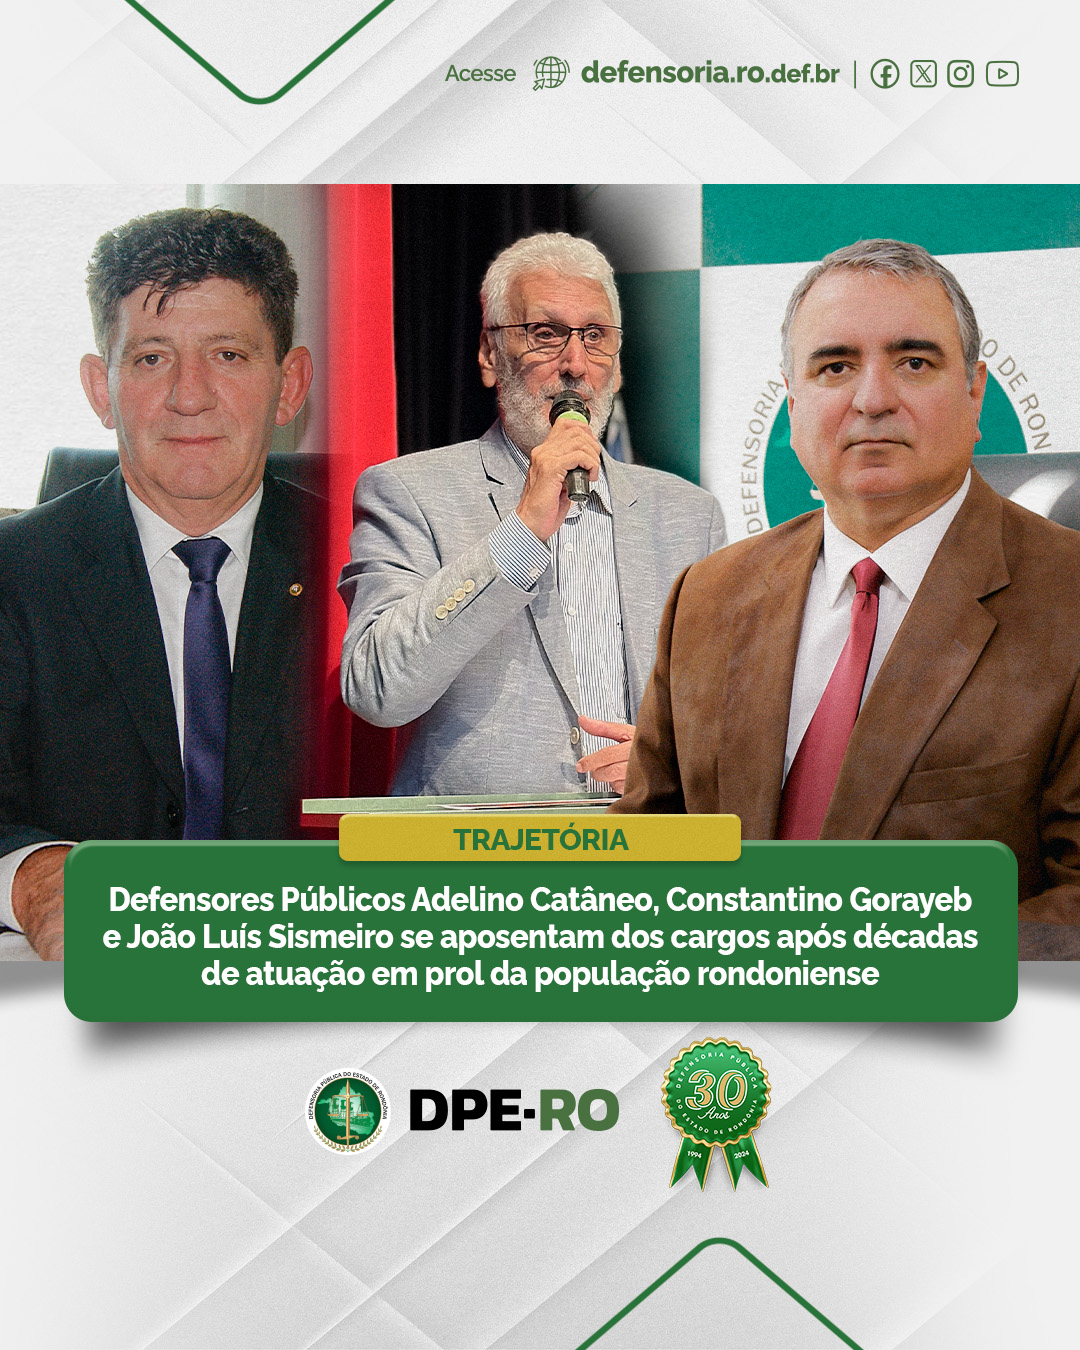 Defensores Públicos Adelino Catâneo, Constantino Gorayeb e João Luís Sismeiro se aposentam dos cargos